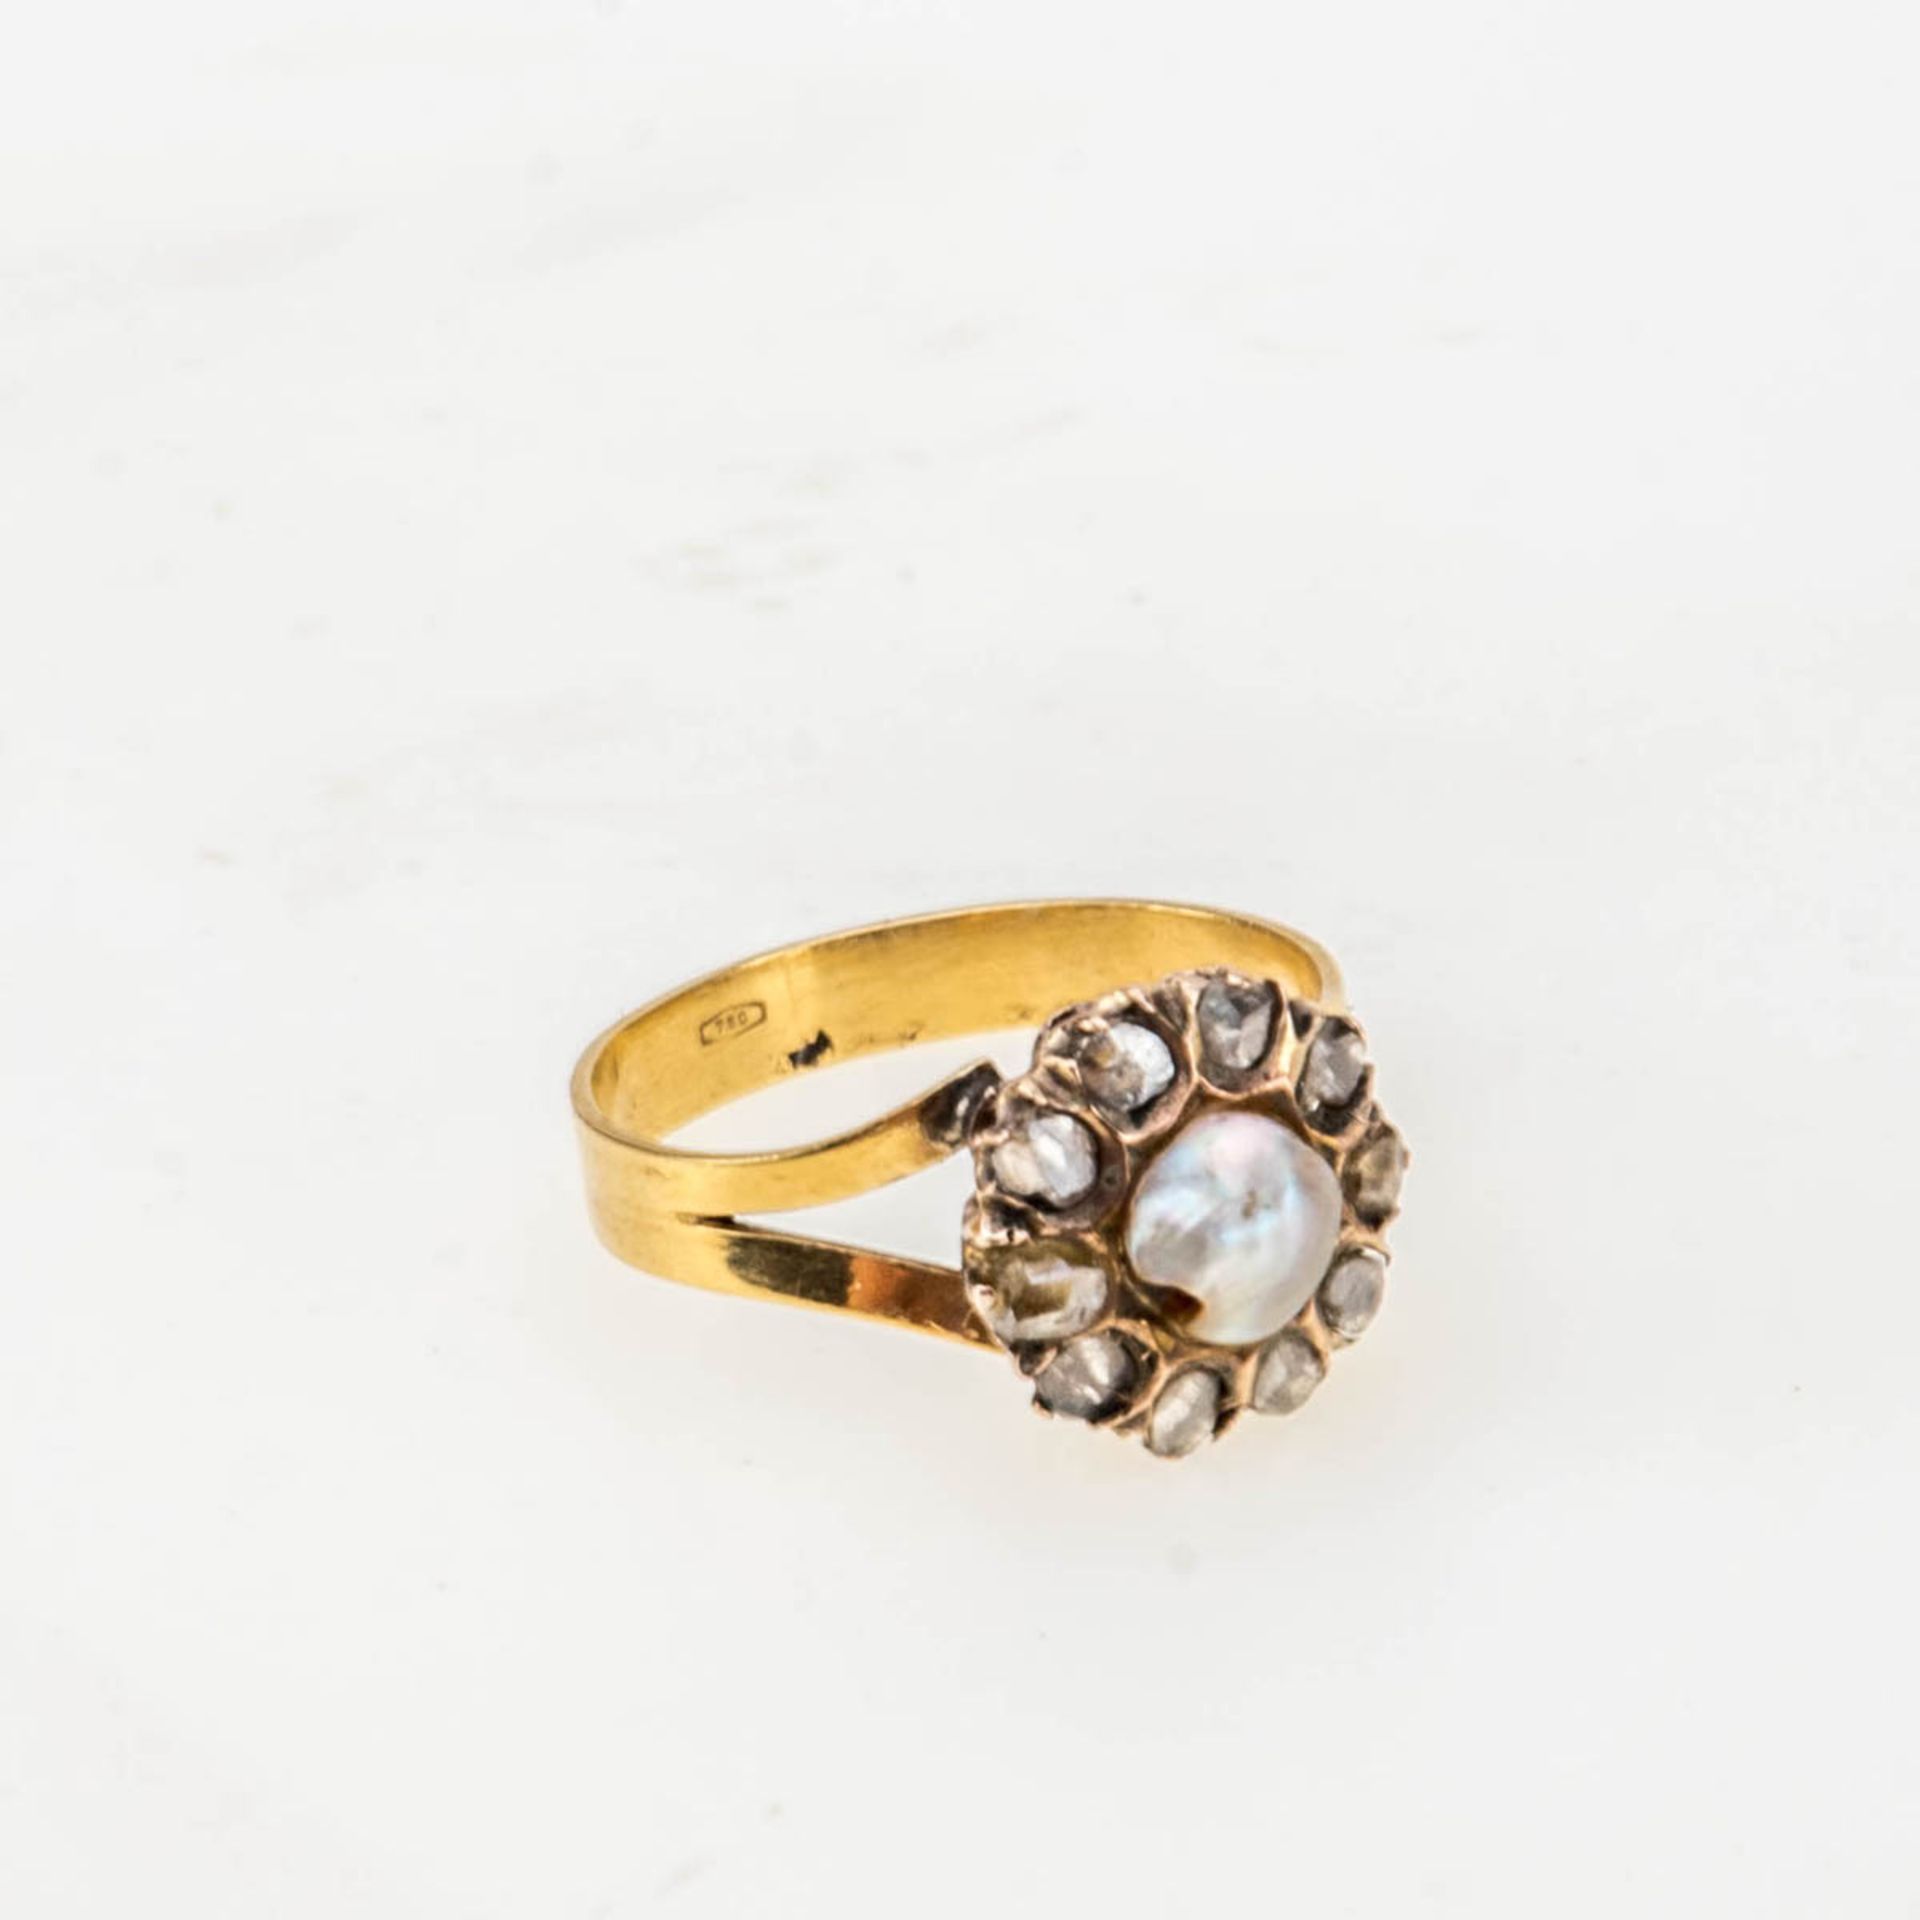 Antiker Ring mit Perle und Diamantrosen750er Gelbgold. Glatte Ringschiene, runder Ringkopf mit einer